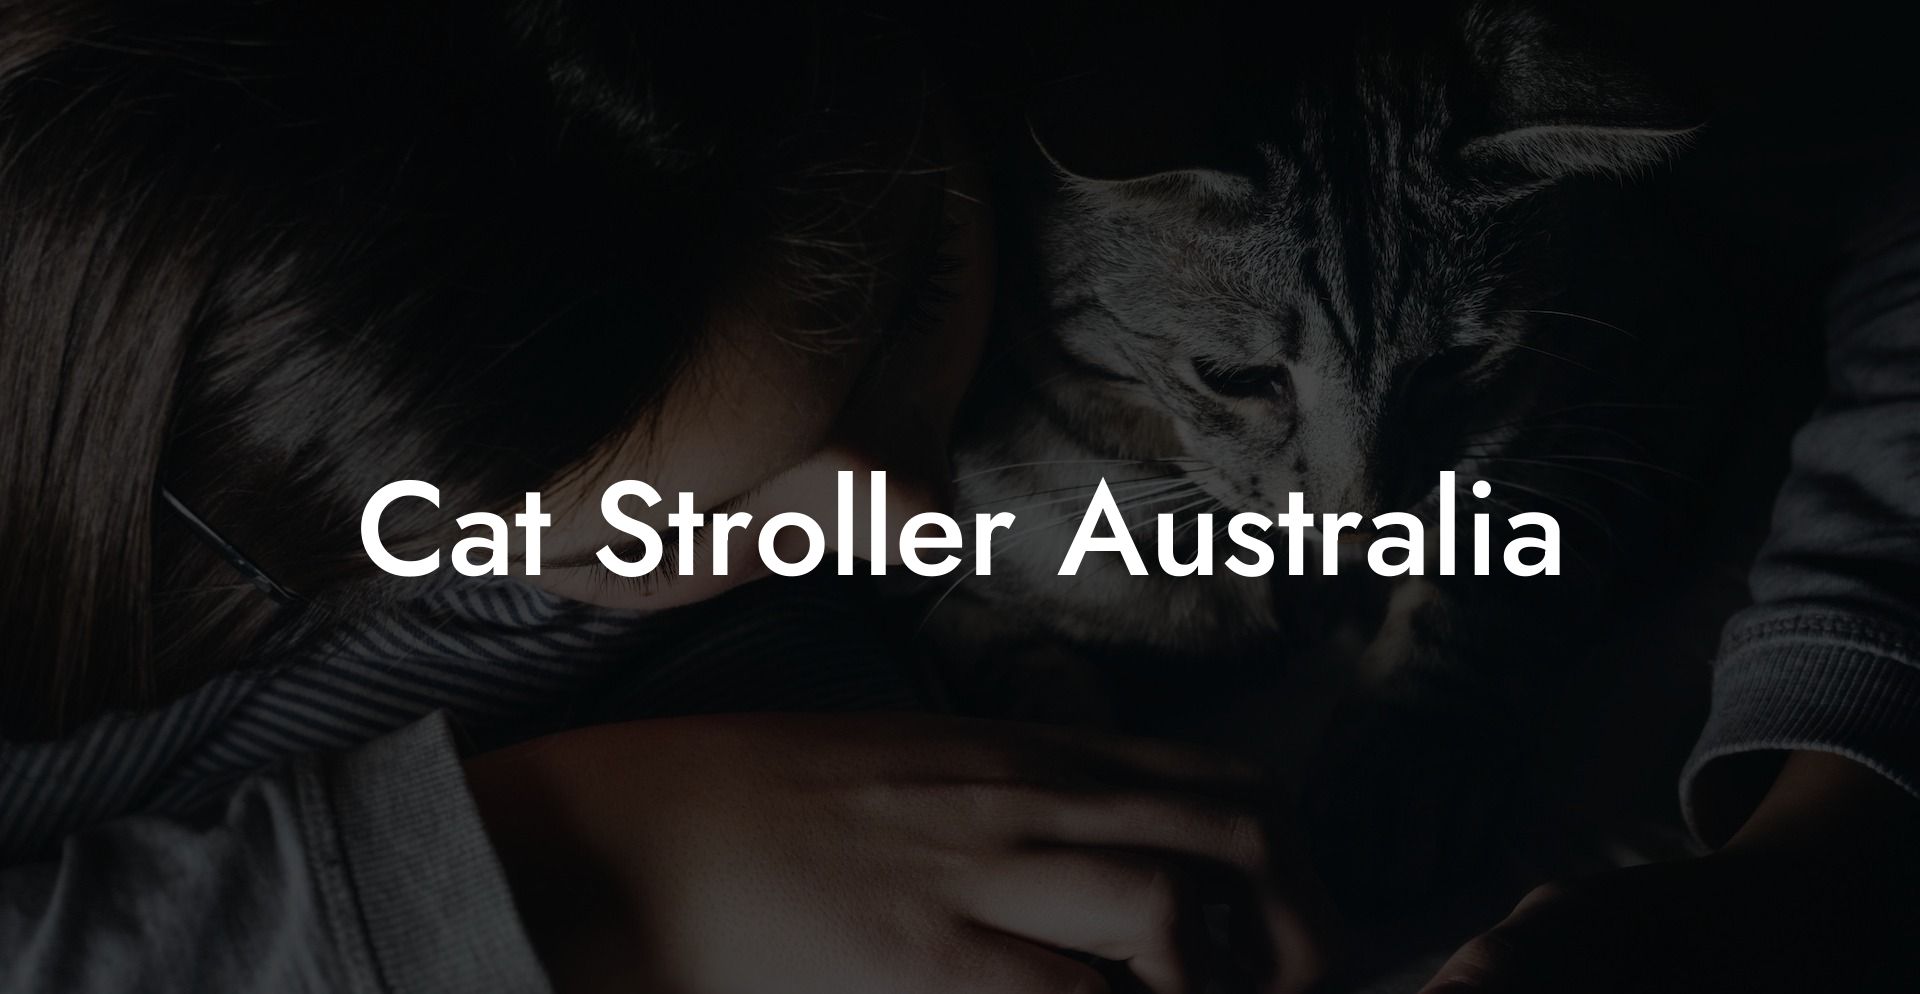 Cat Stroller Australia